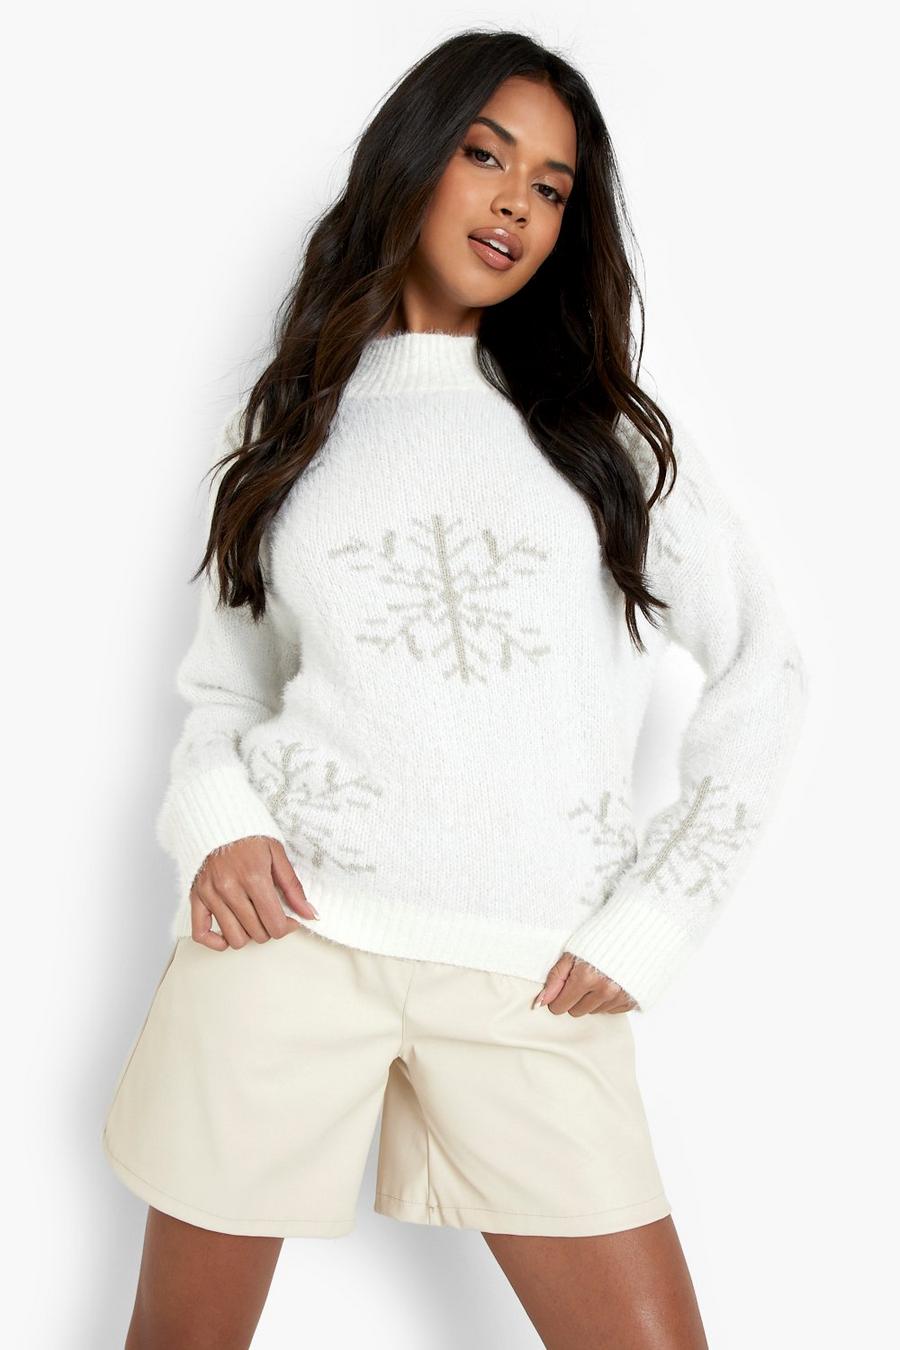 Flauschiger Weihnachtspullover mit Schneeflocke, Creme white